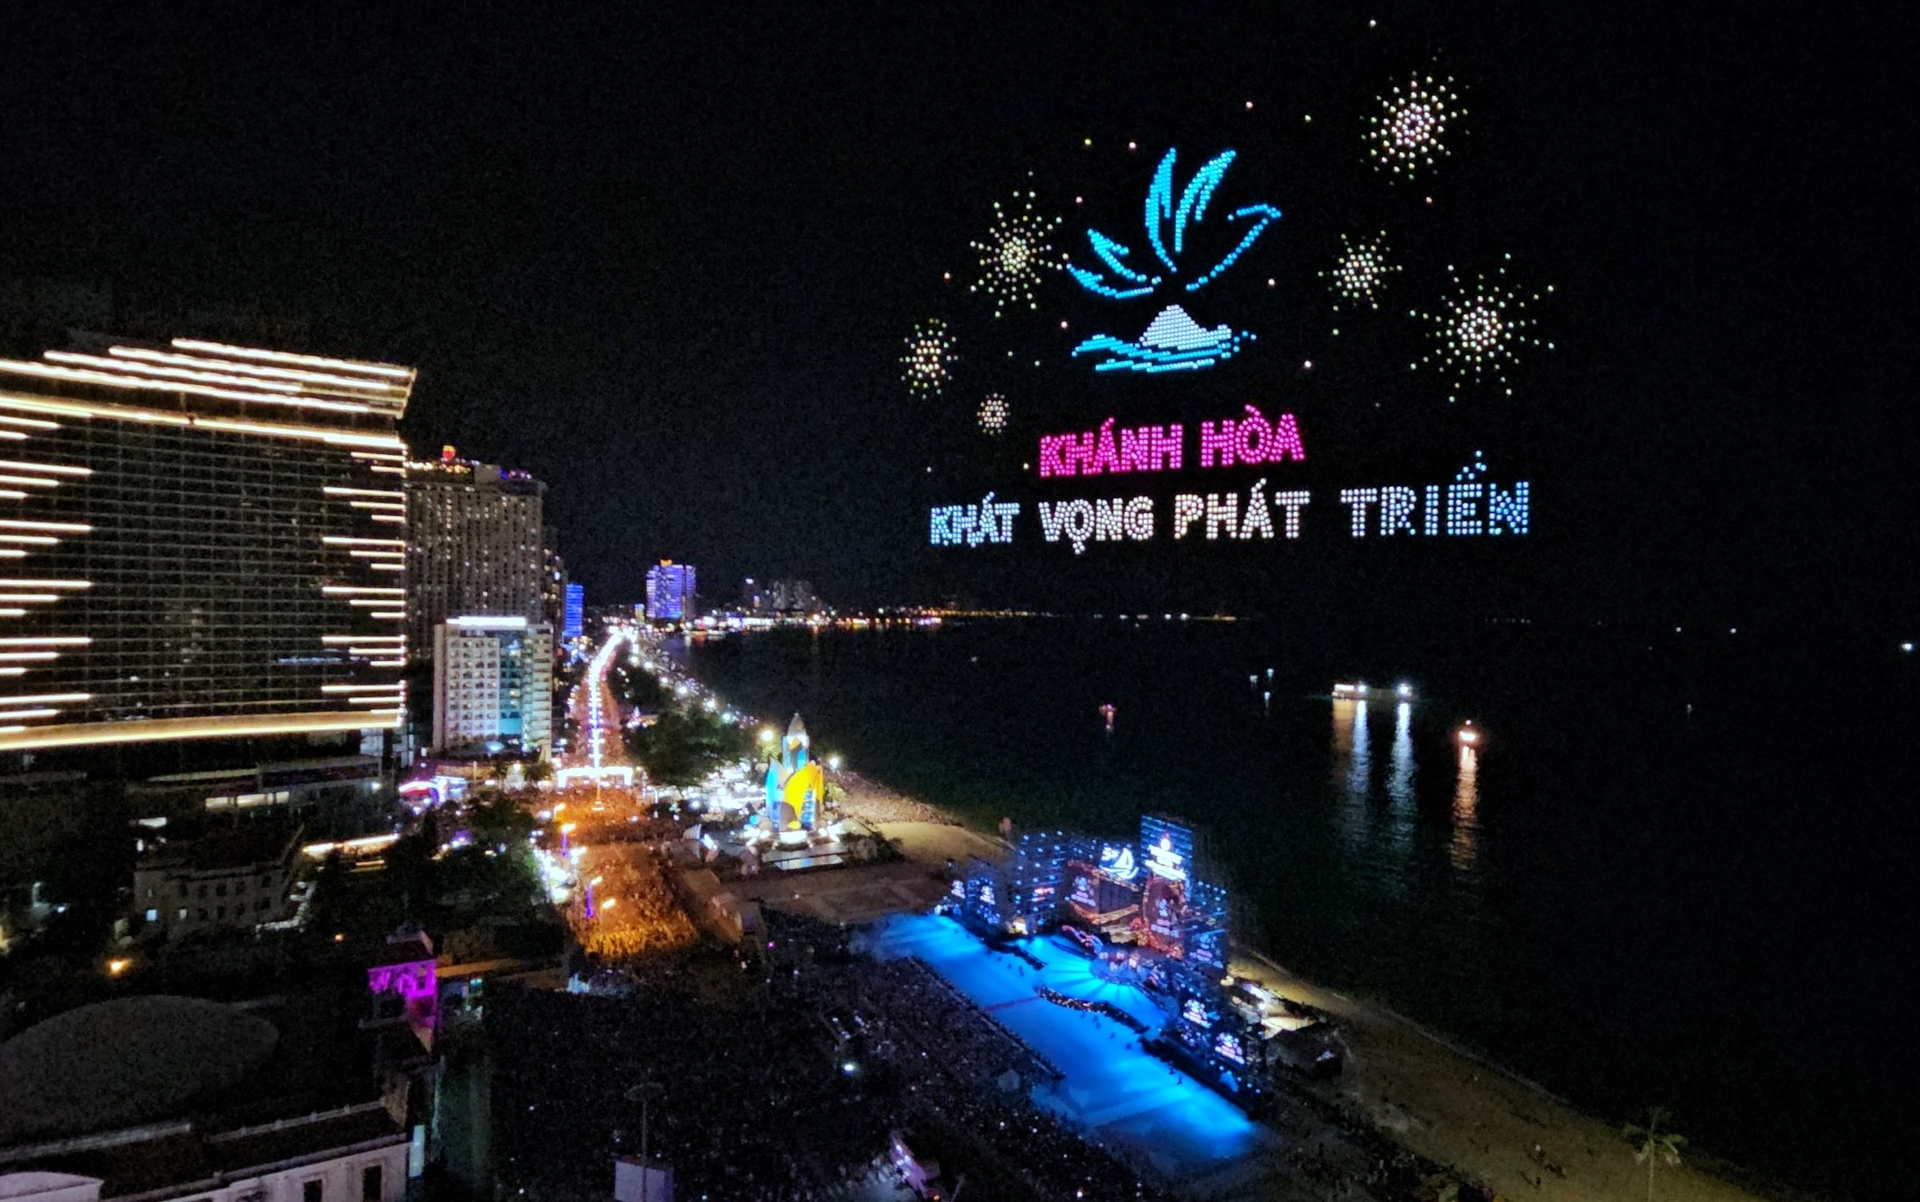 Đây là lần đầu tiên, tỉnh Khánh Hòa trình diễn ánh sáng mới lạ, hấp dẫn từ thiết bị bay không người lái tại Festival Biển Nha Trang. Ảnh: PV.